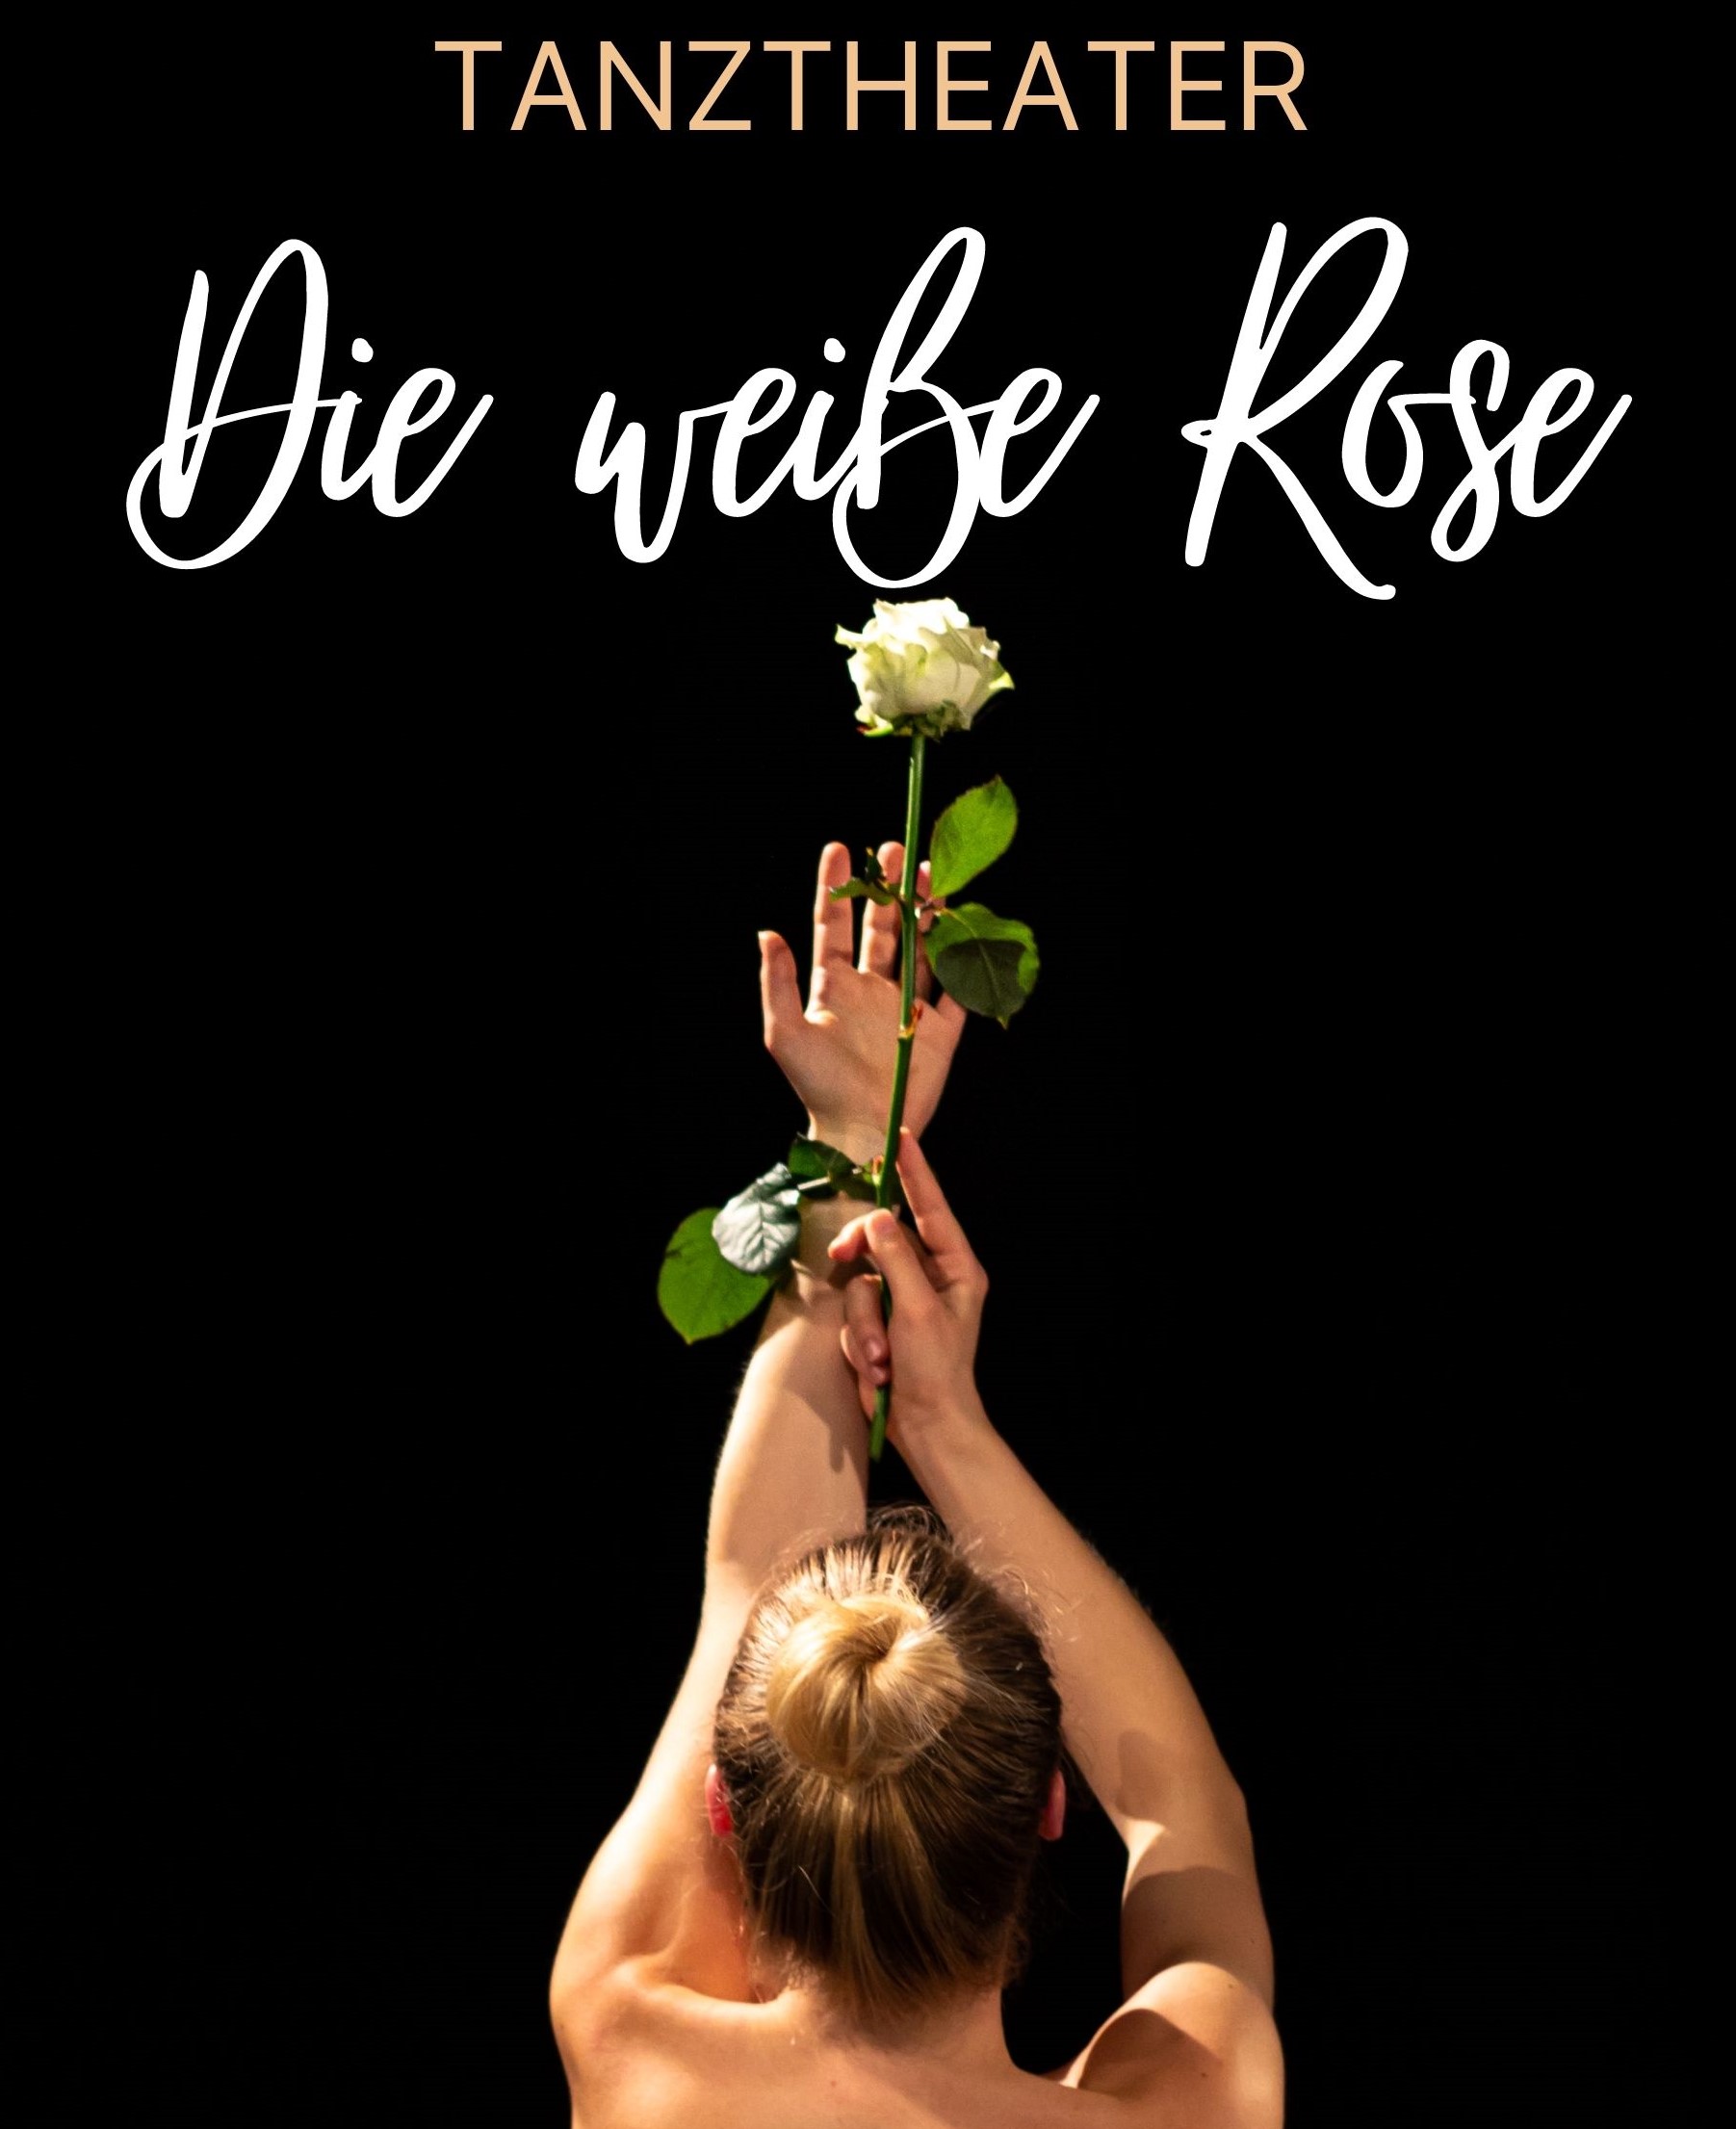 Schrift: Tanztheater Die Weiße Rose; Tanzende Frau mit weißer Rose